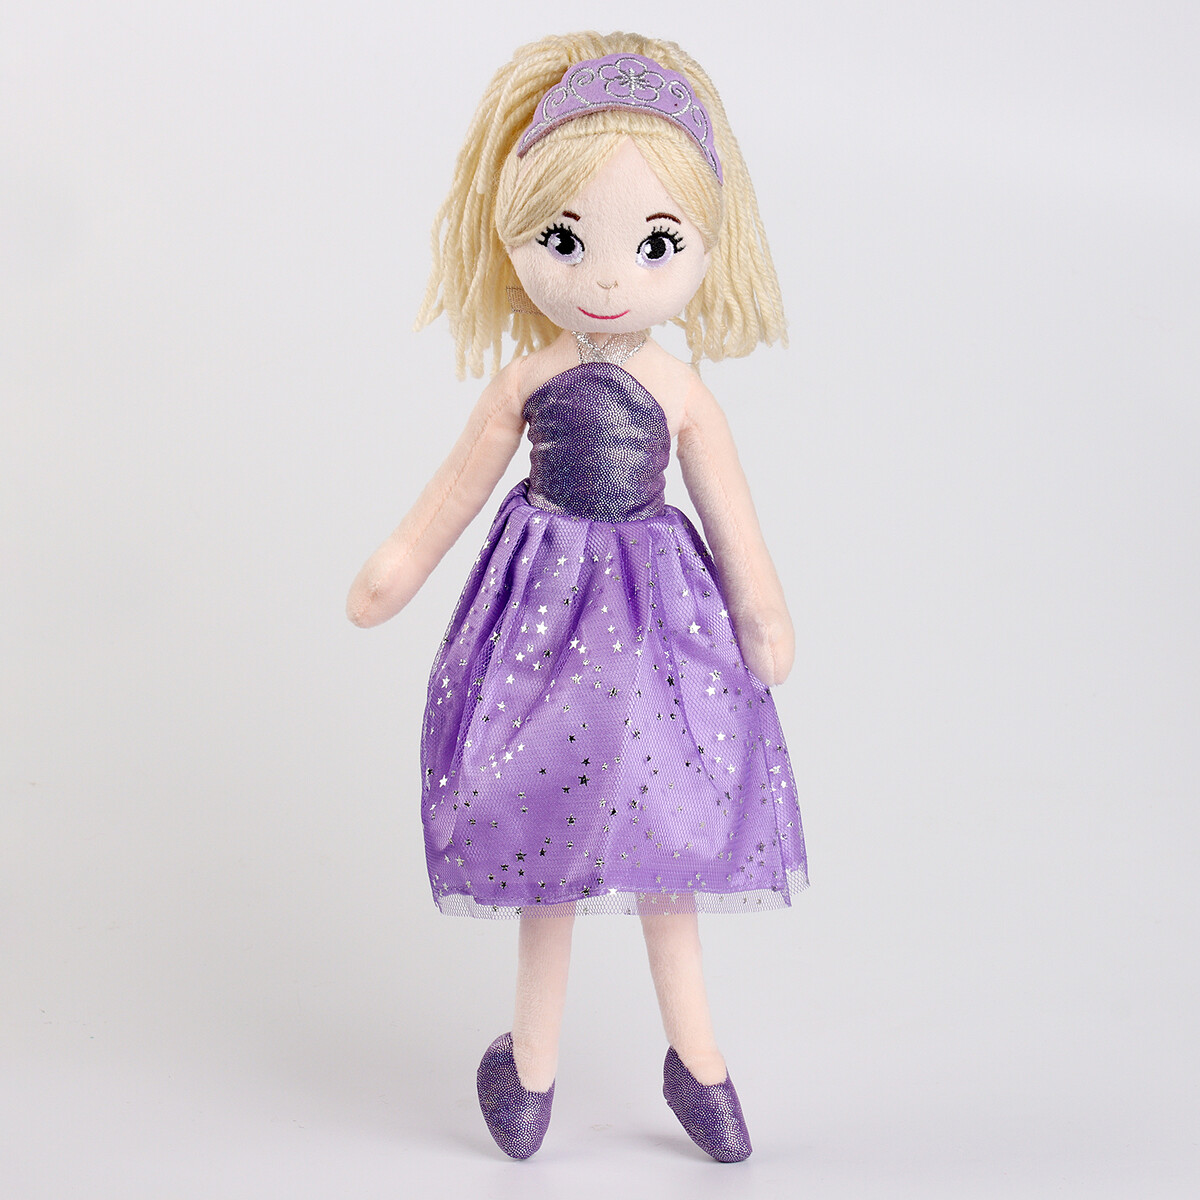 Мягкая игрушка платье для девочек в фиолетовом оттенке